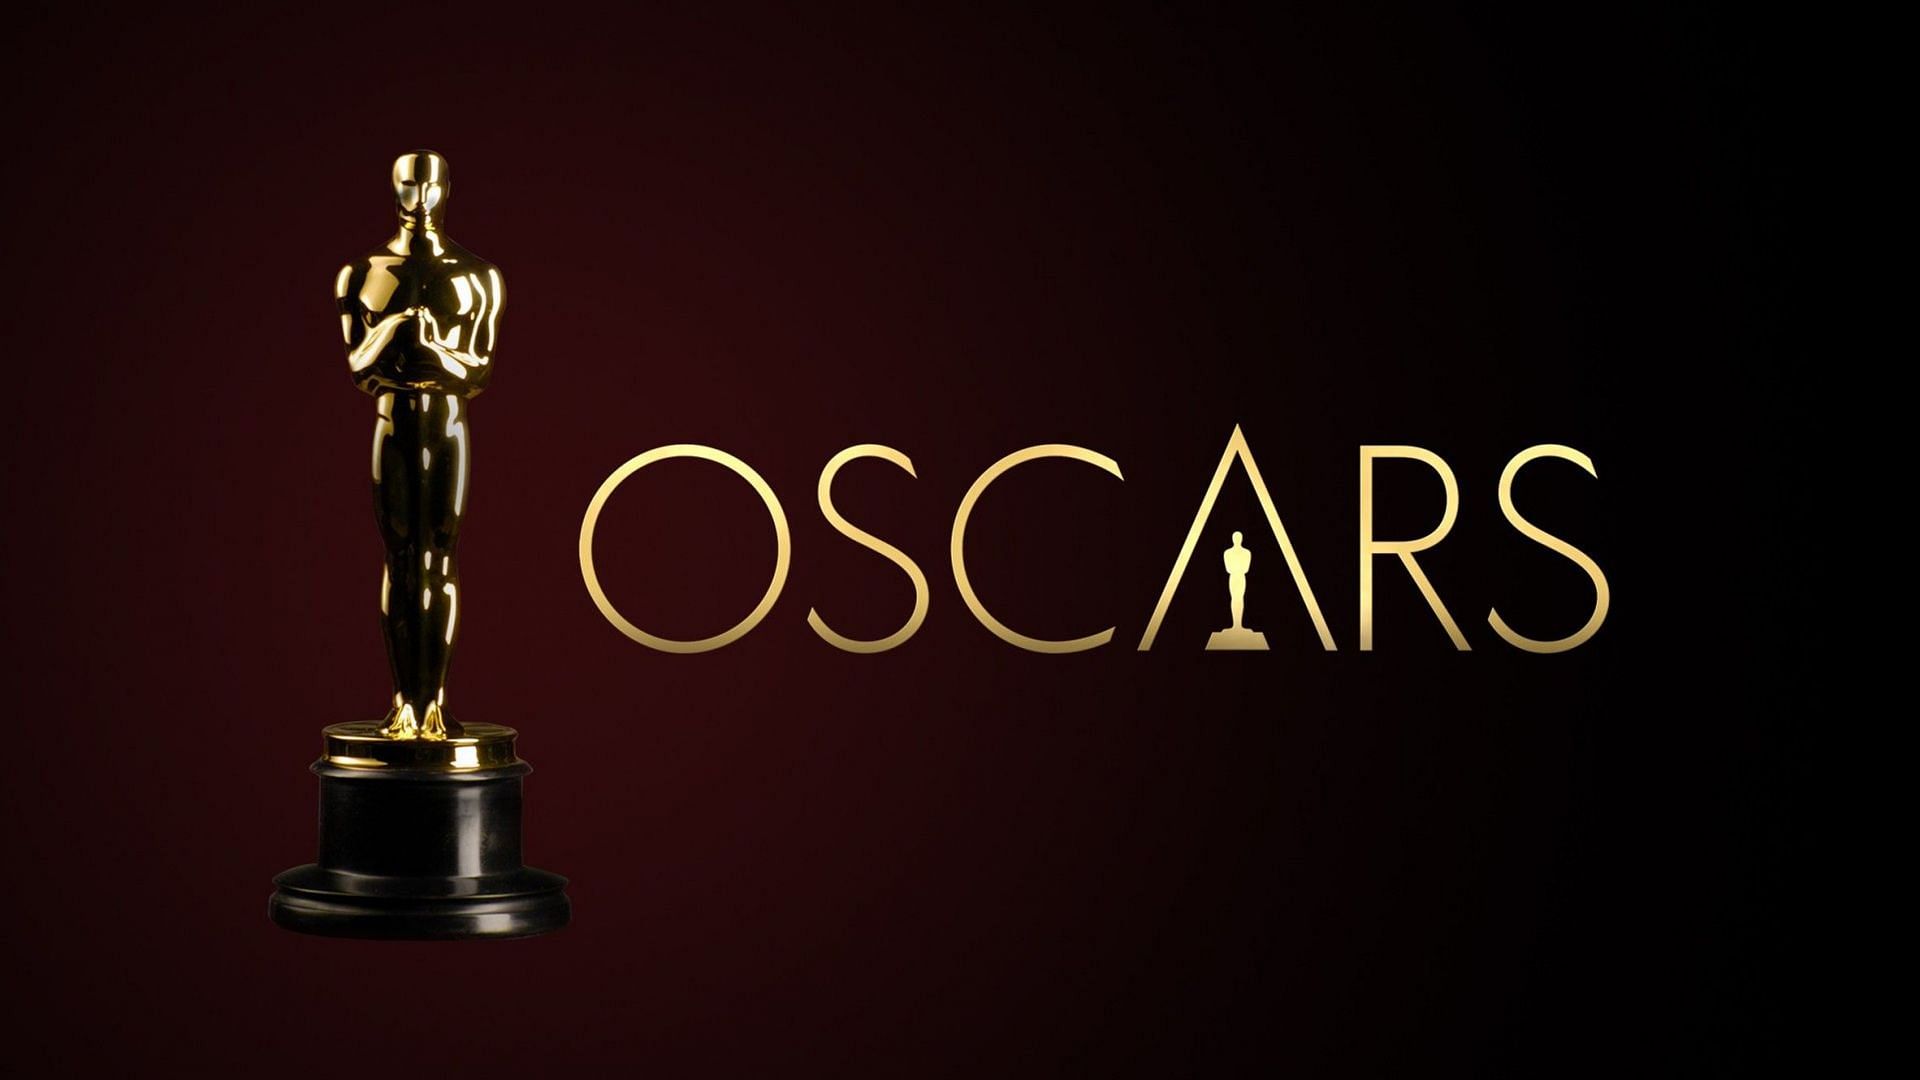 The Academy Awards aka Oscars (Image via Oscars)